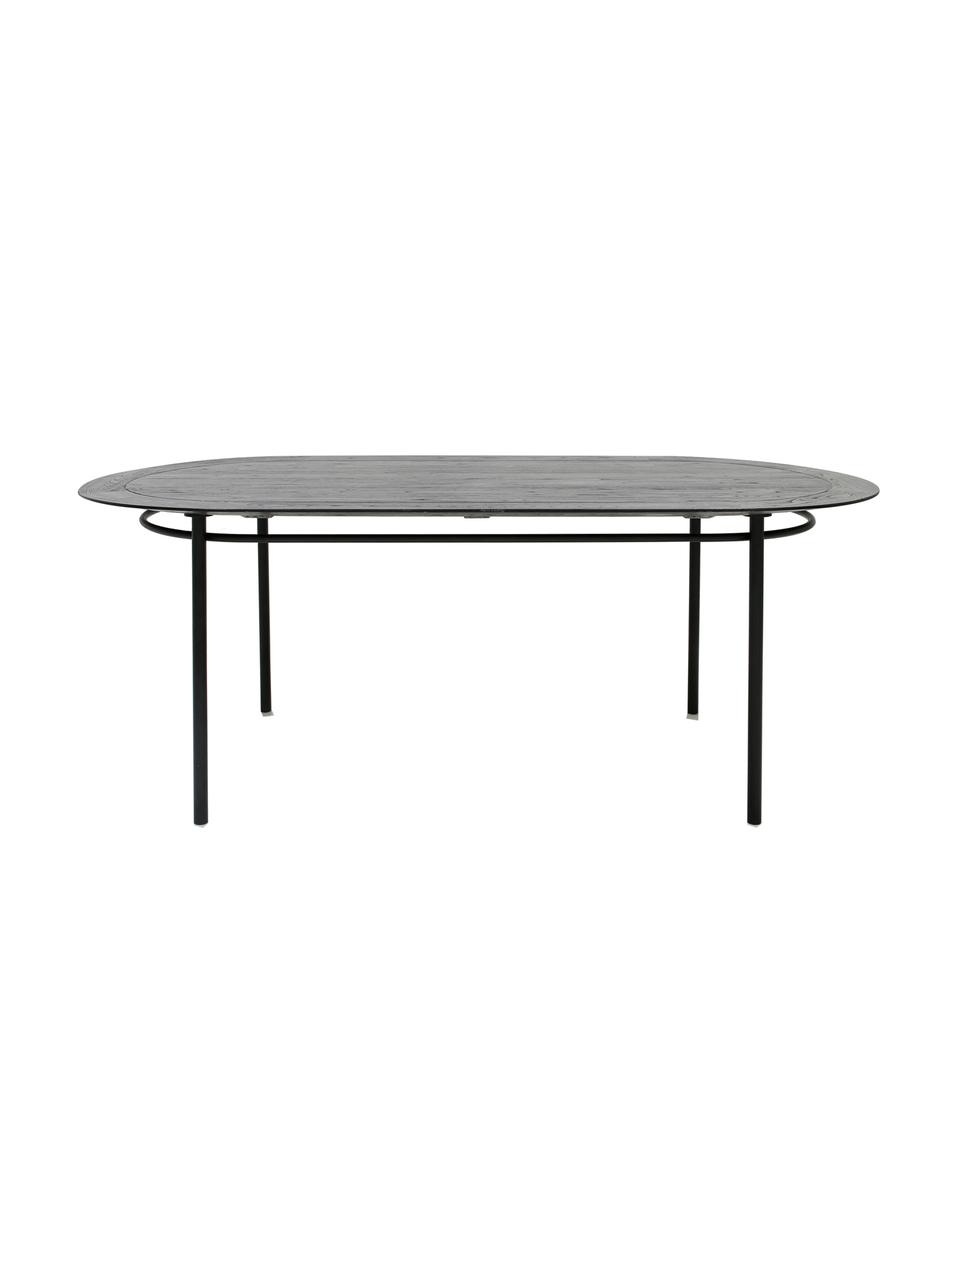 Oválny jedálenský stôl s doskou z masívu Ringding, 200 x 100 cm, Čierna